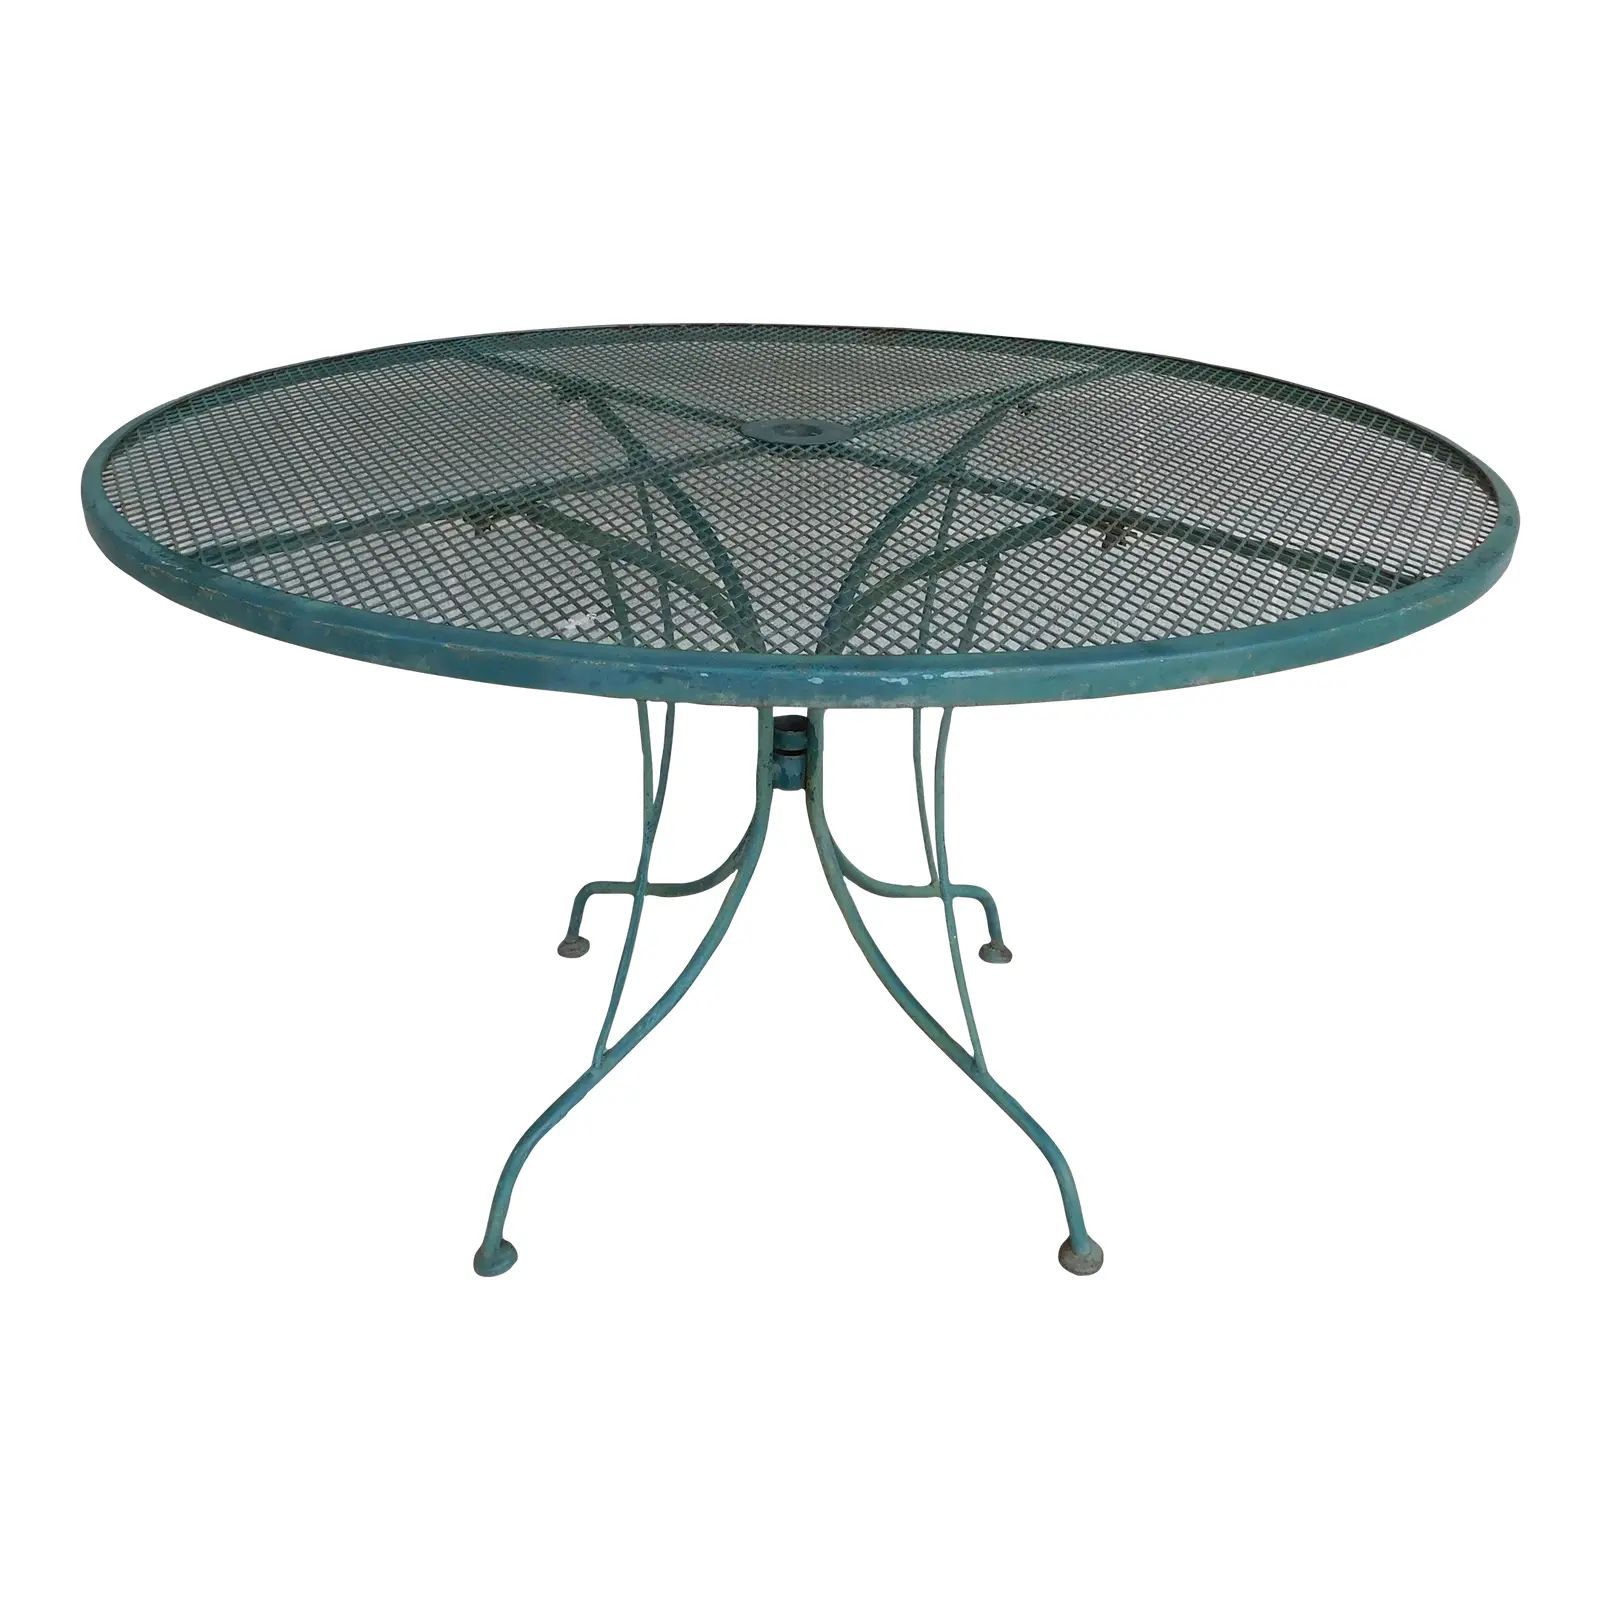 Vintage Wrought Iron Saarinen Style Round Table 48"w X 29"h | Chairish